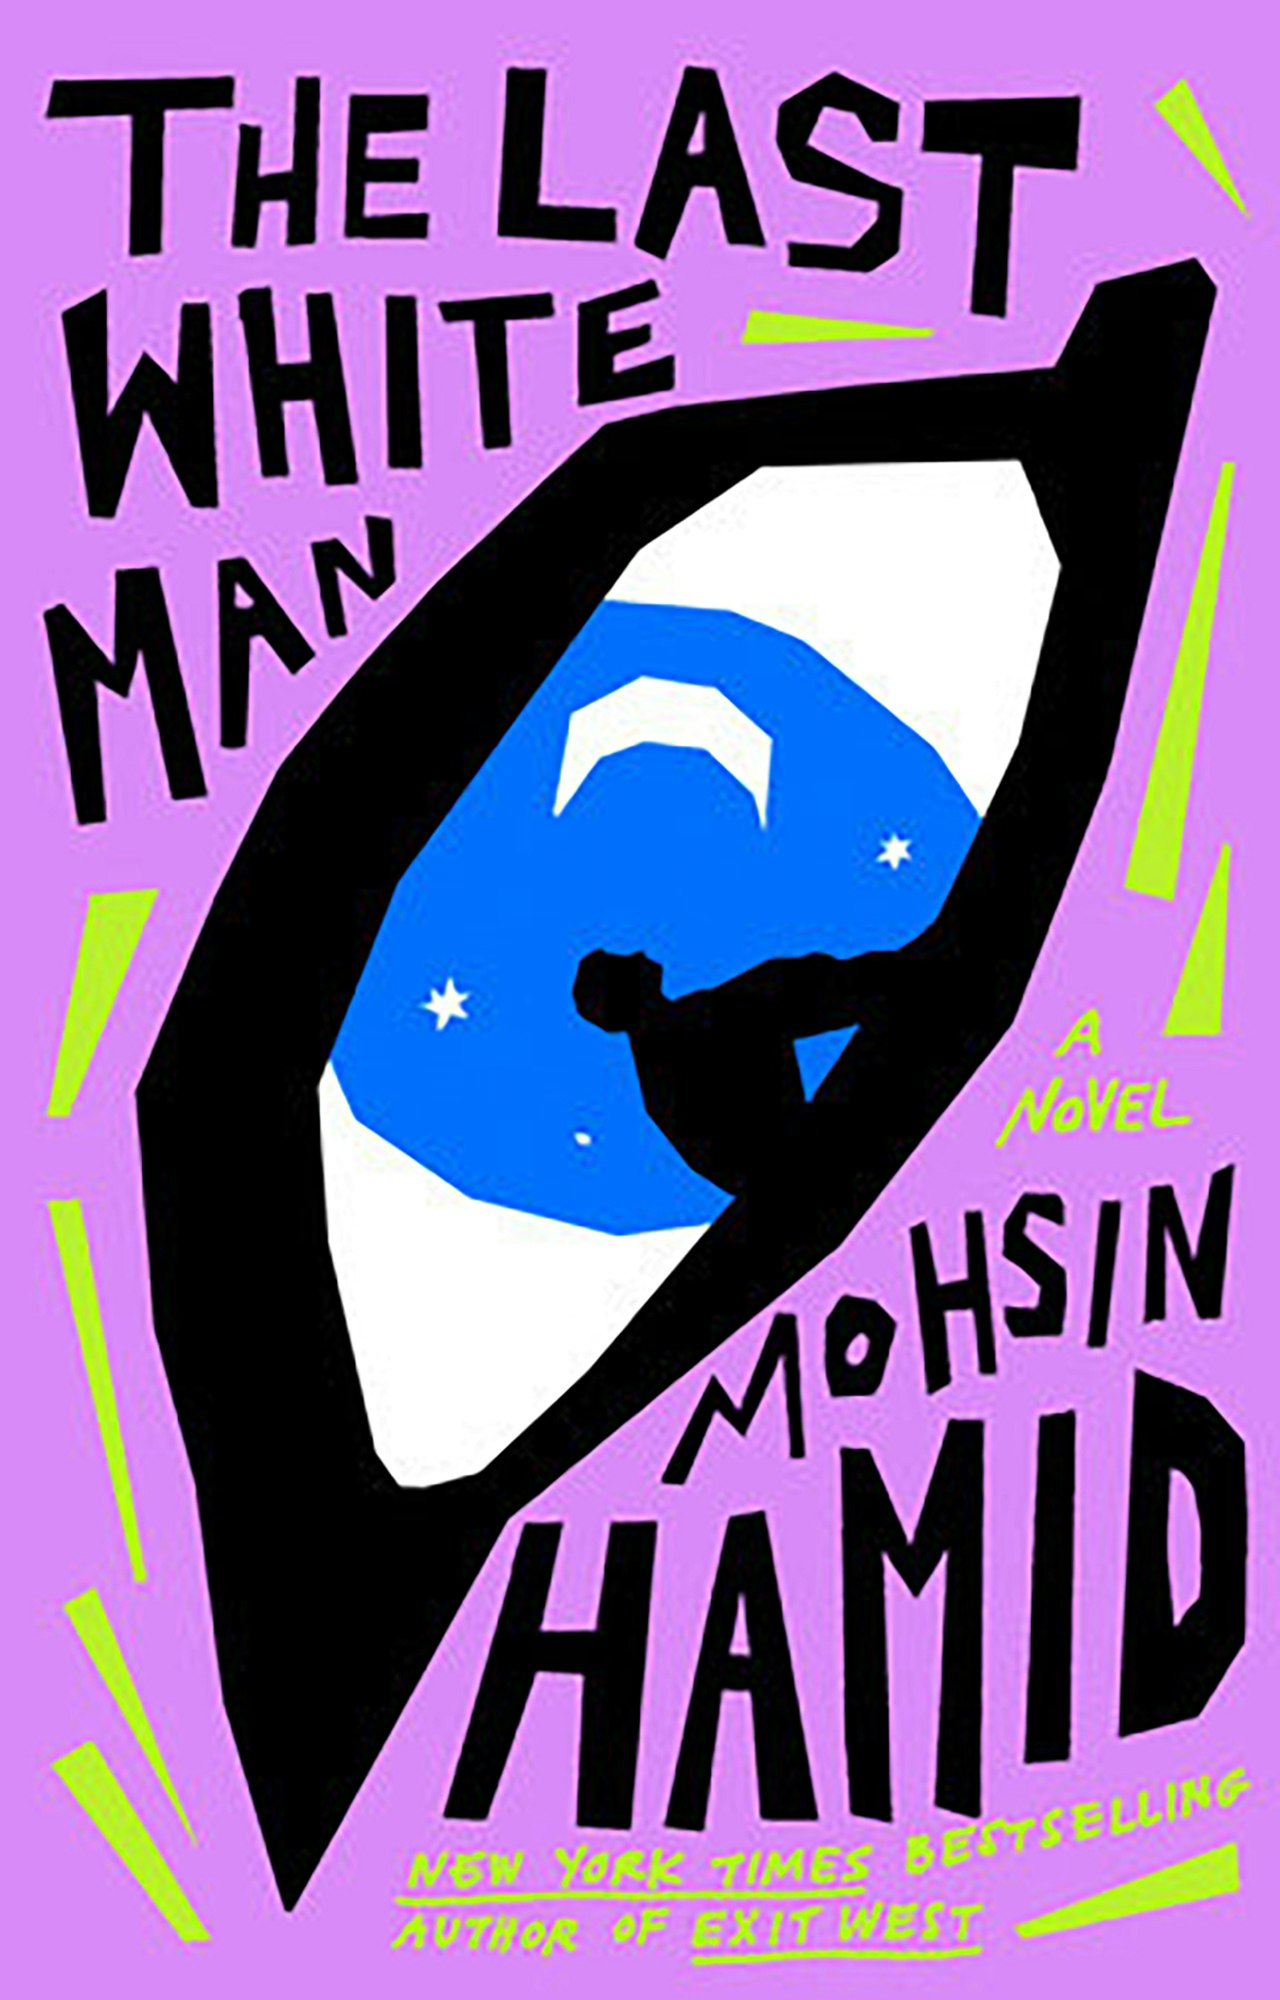 Meena Sex Blue Film - Mohsin Hamid's The Last White Man â€“ The Brooklyn Rail